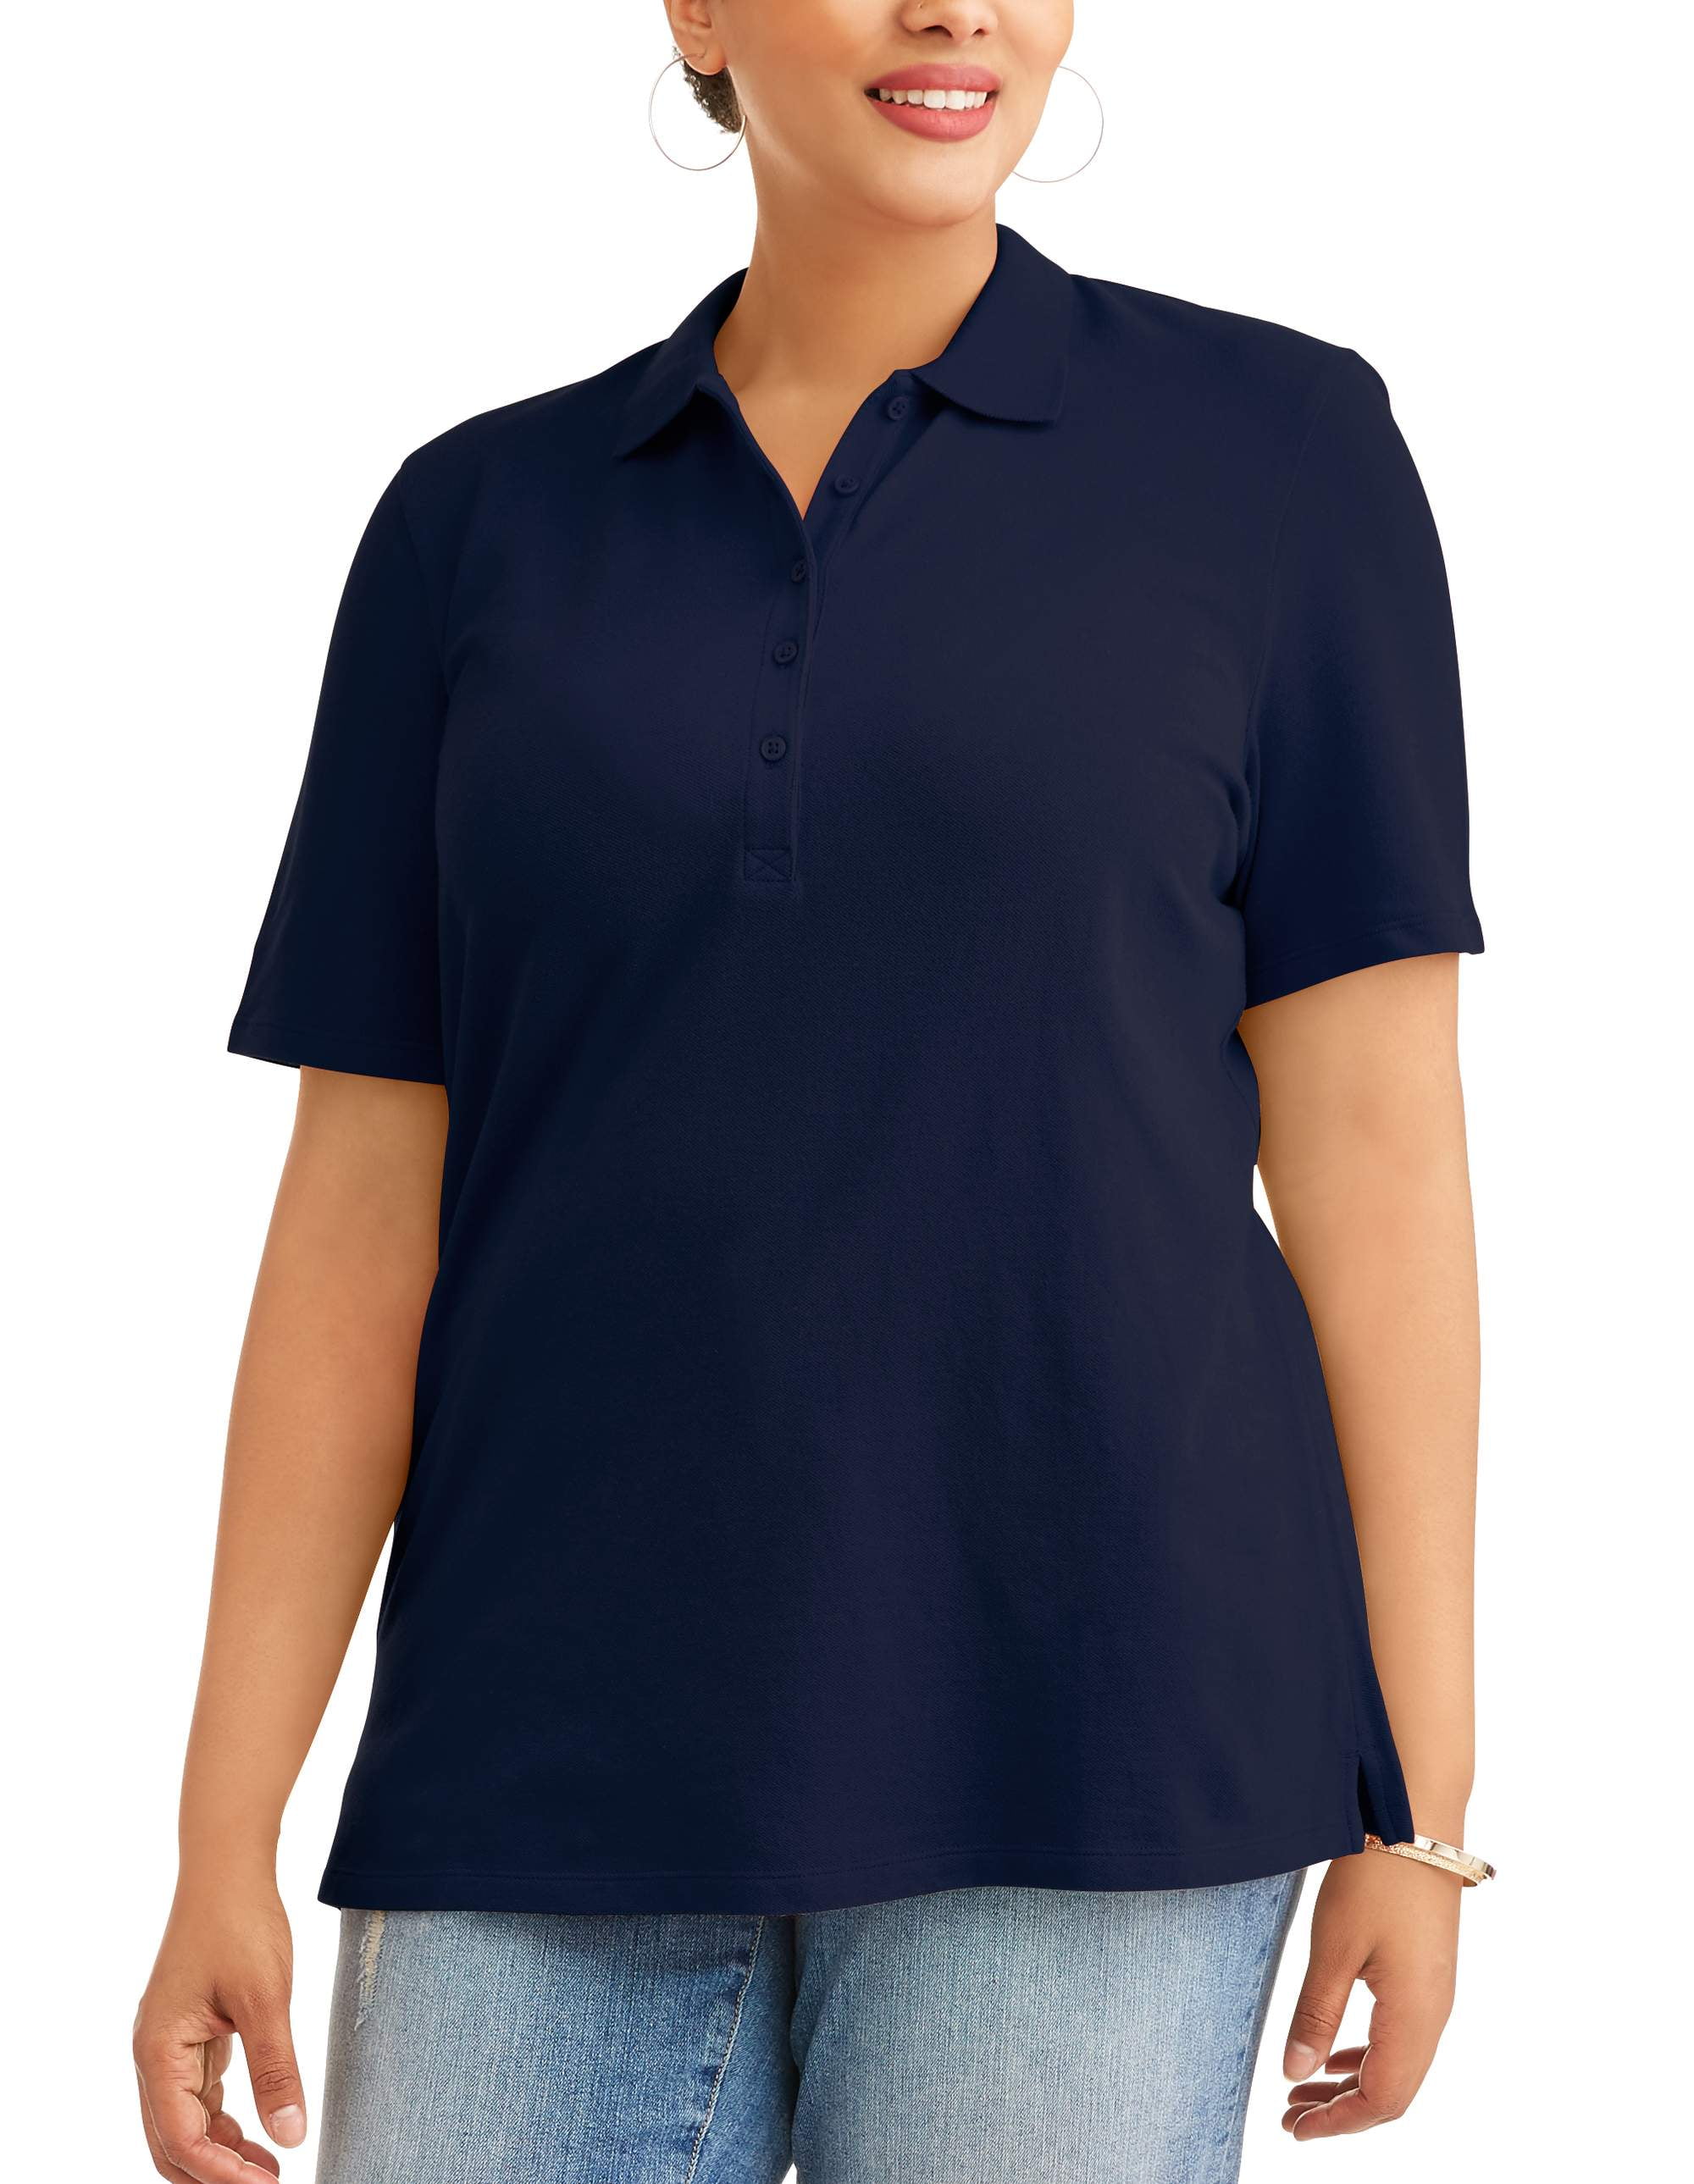 women's plus size polo shirts